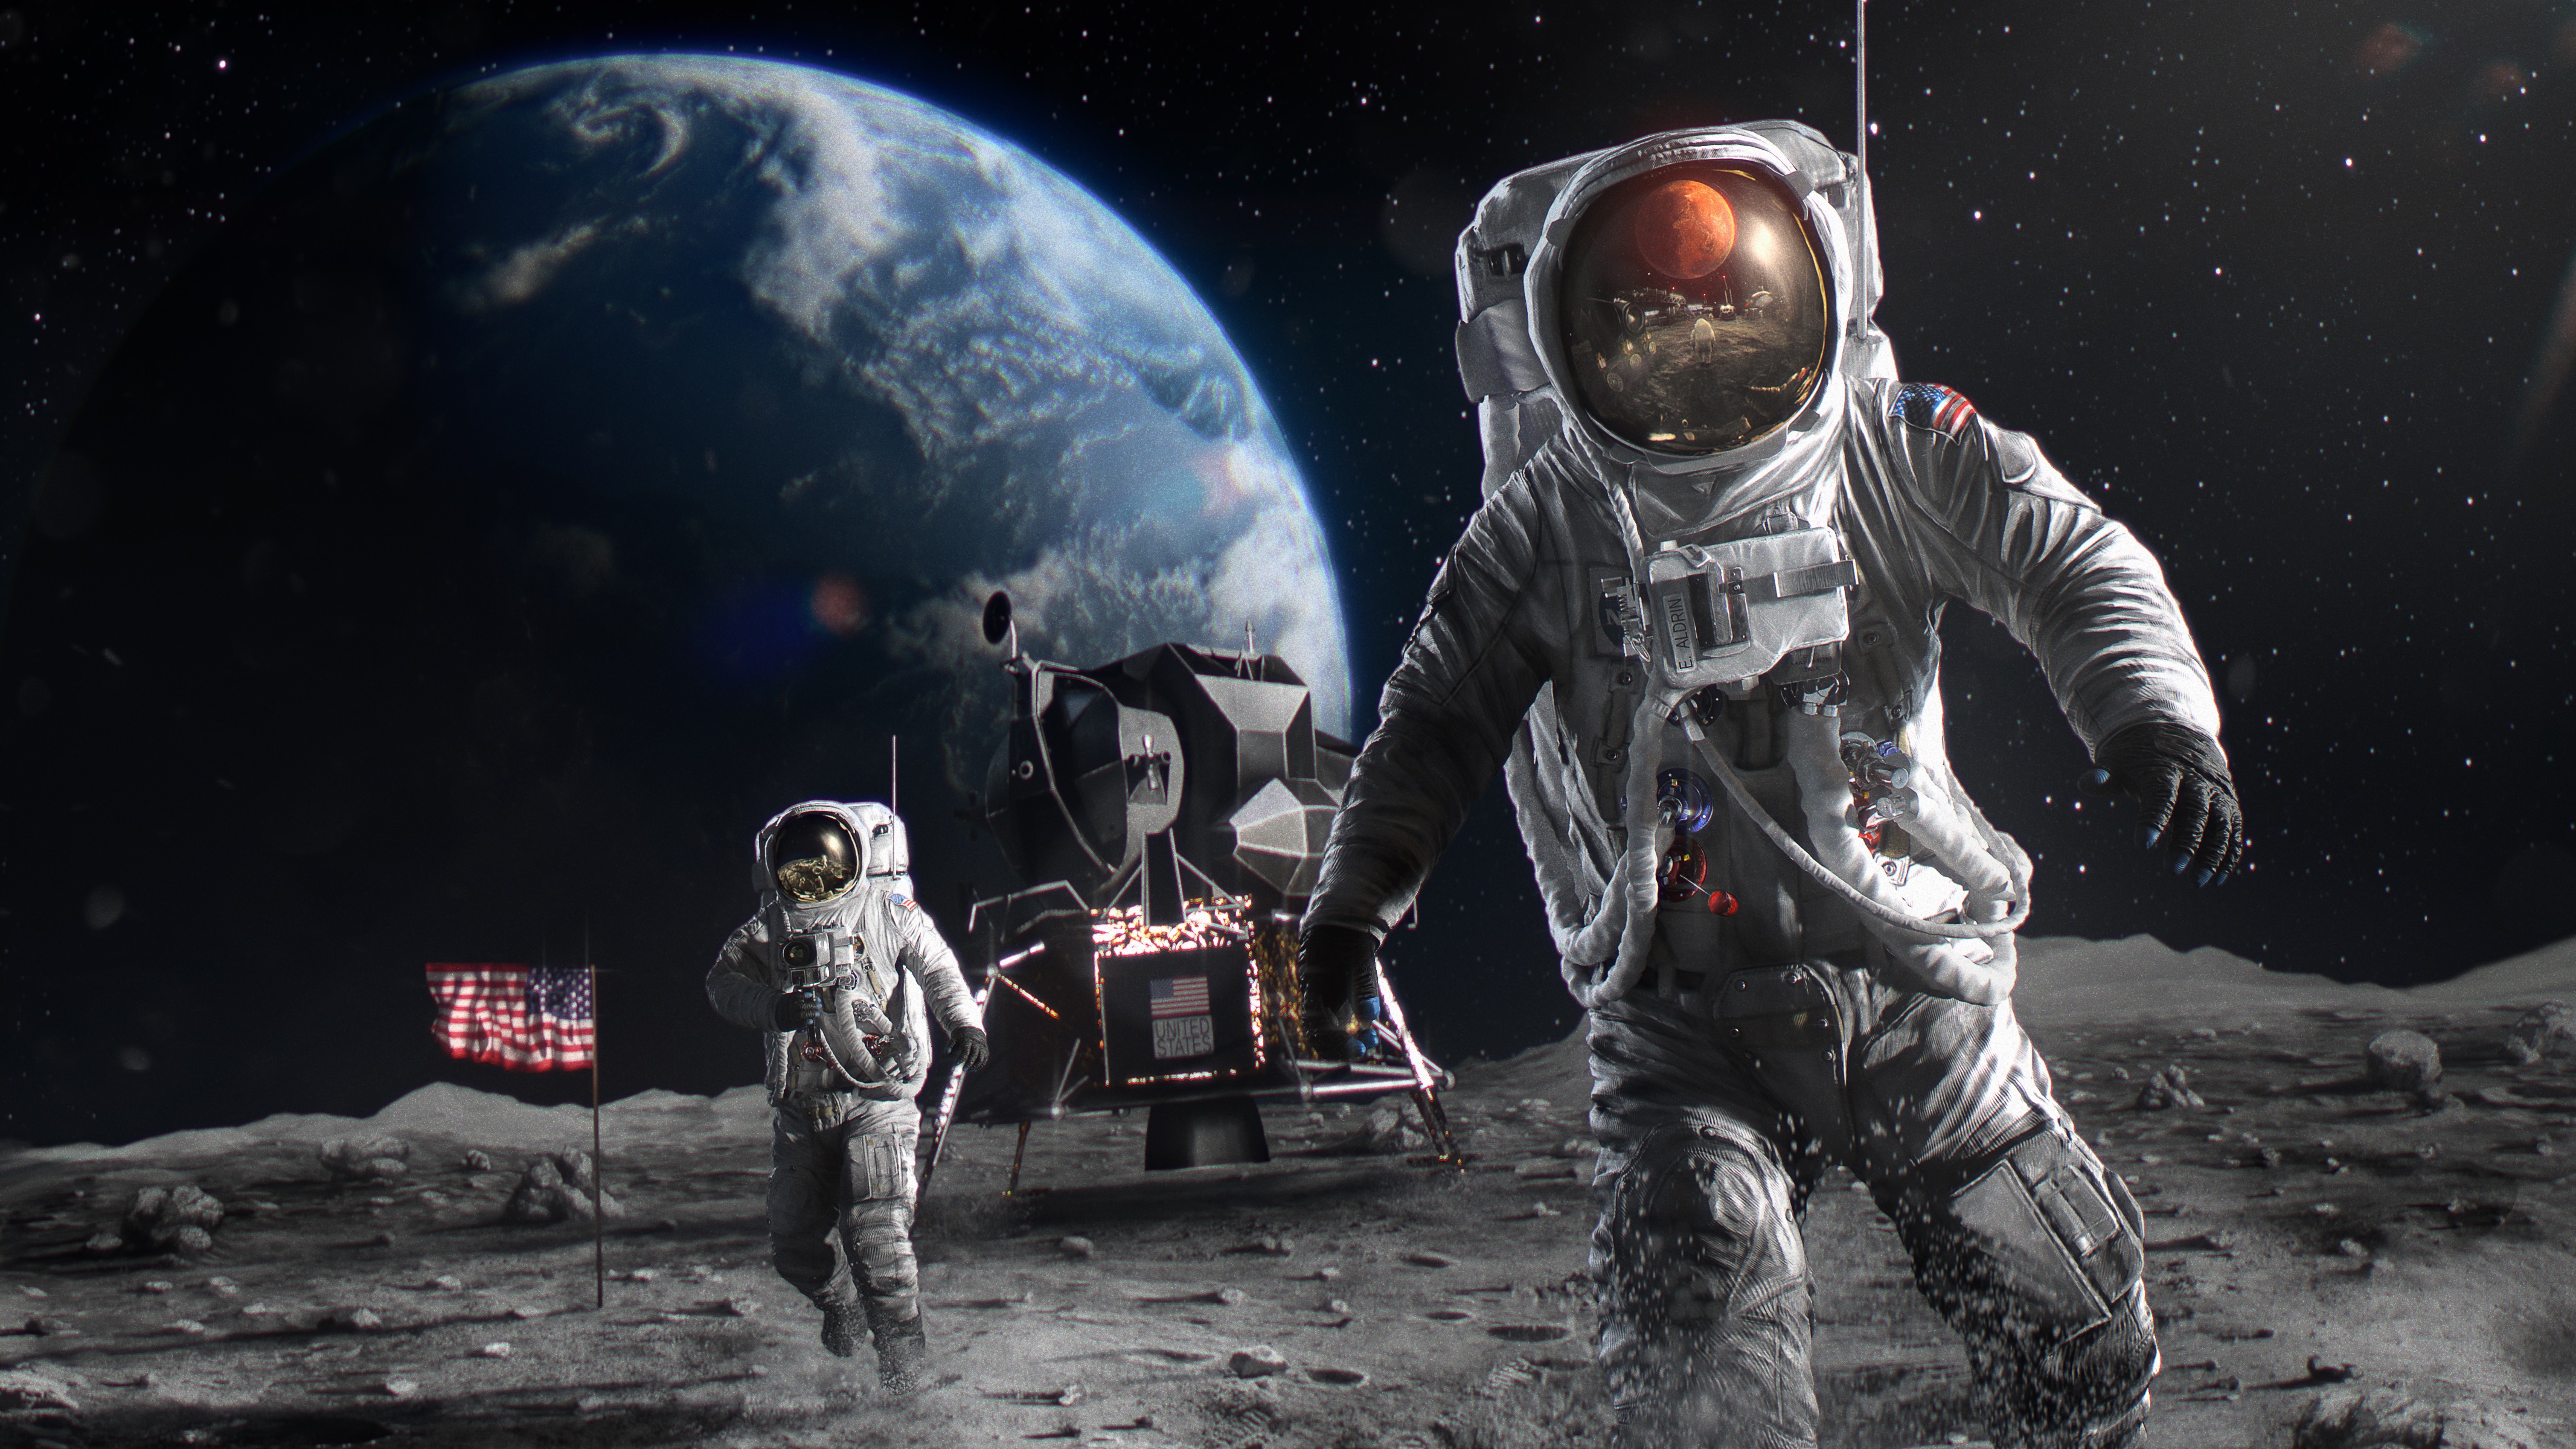 Astronauts on Moon 4k Ultra HD Wallpaper